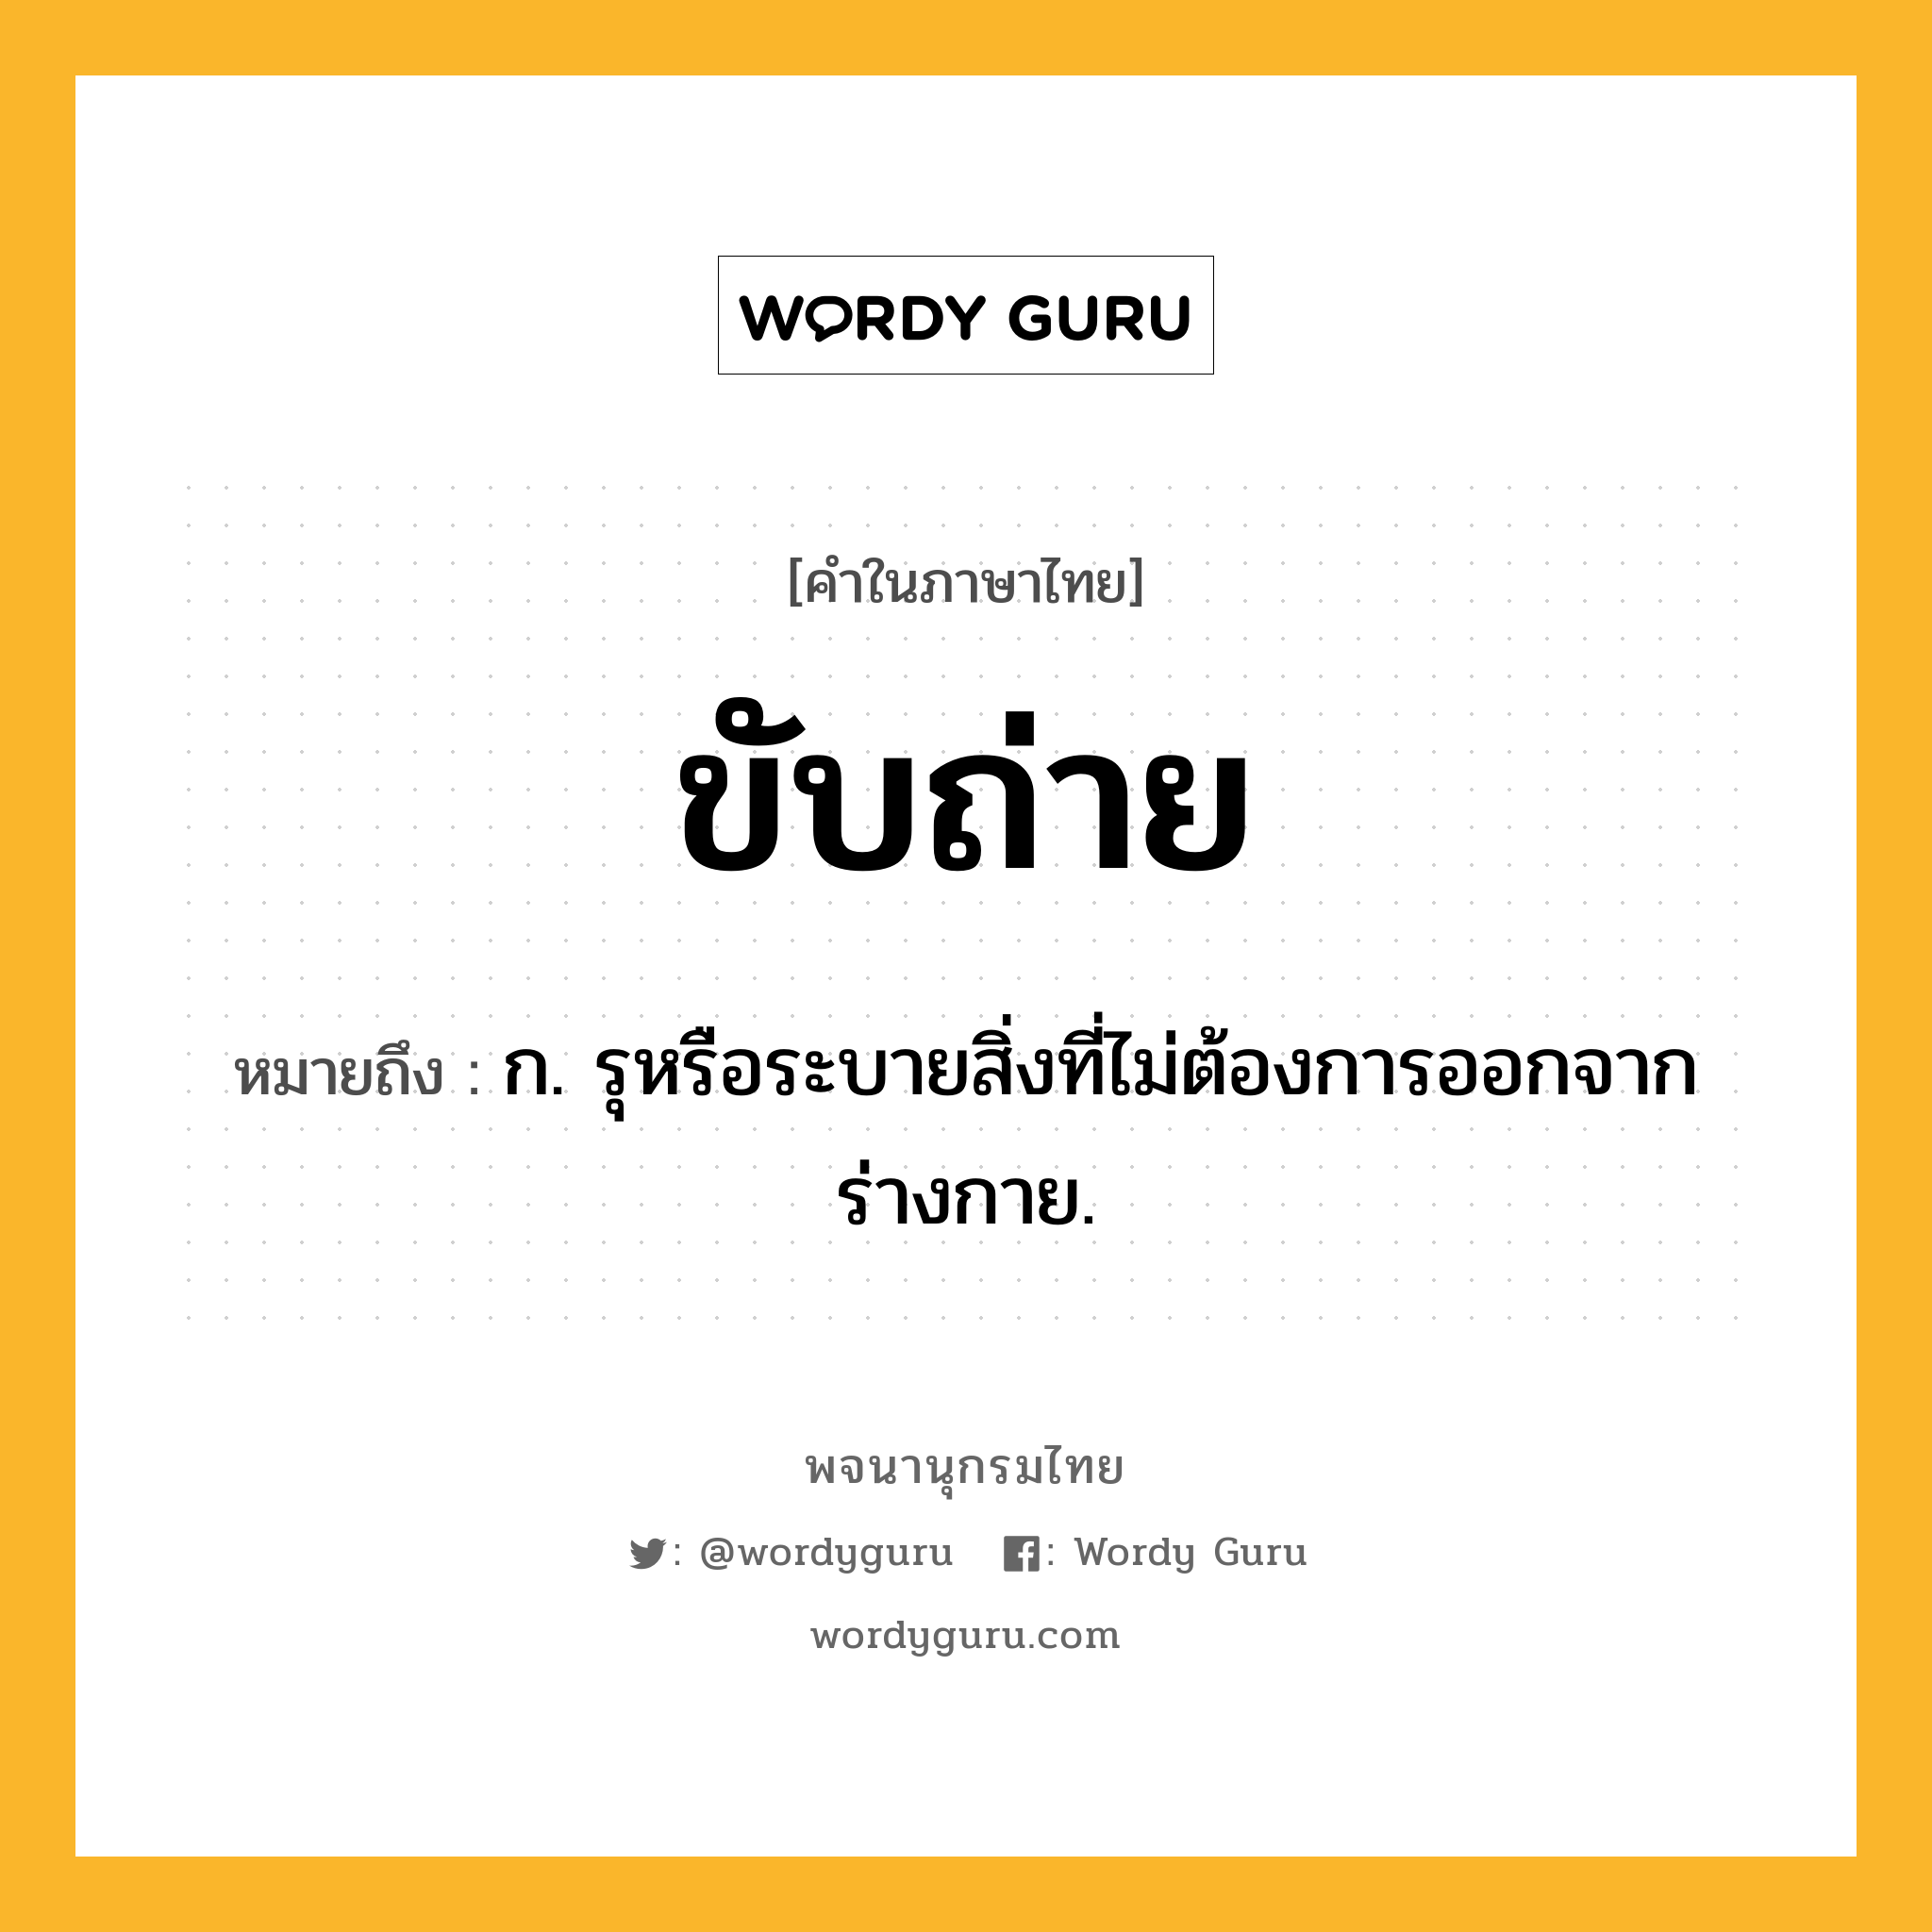 ขับถ่าย ความหมาย หมายถึงอะไร?, คำในภาษาไทย ขับถ่าย หมายถึง ก. รุหรือระบายสิ่งที่ไม่ต้องการออกจากร่างกาย.